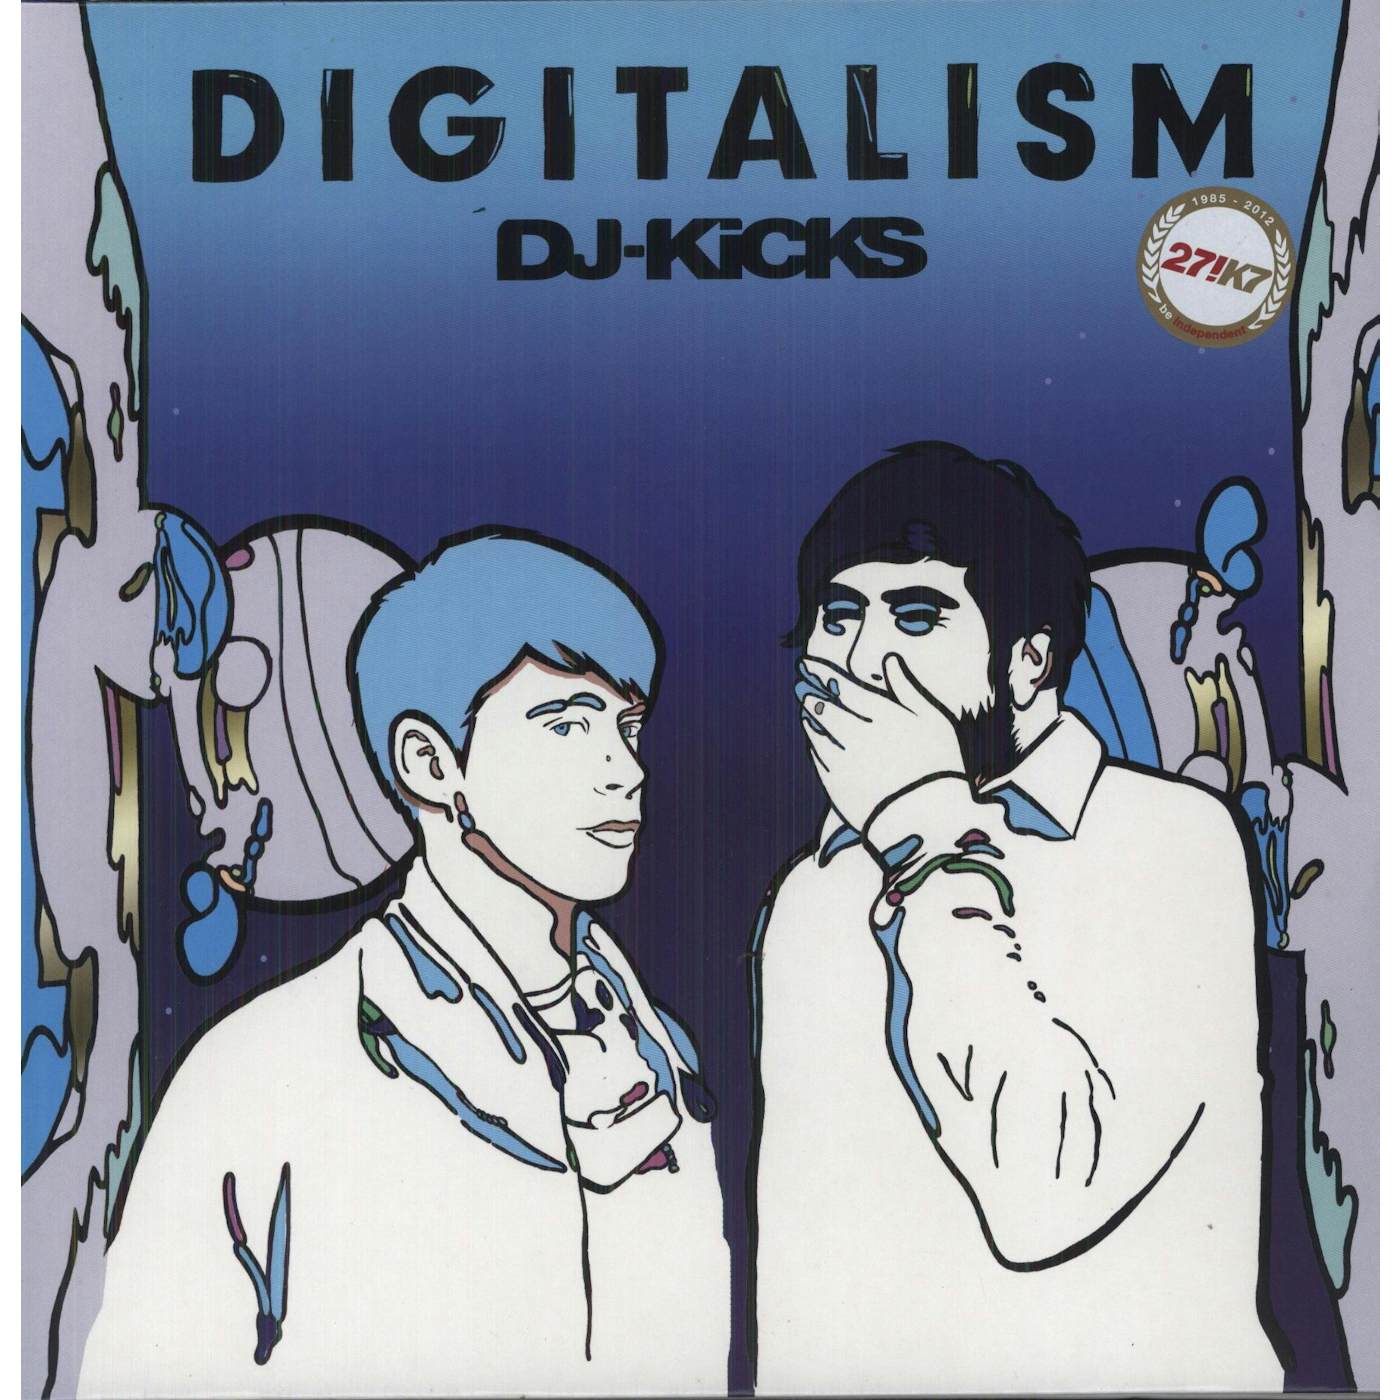 Digitalism DJ-Kicks Vinyl Record